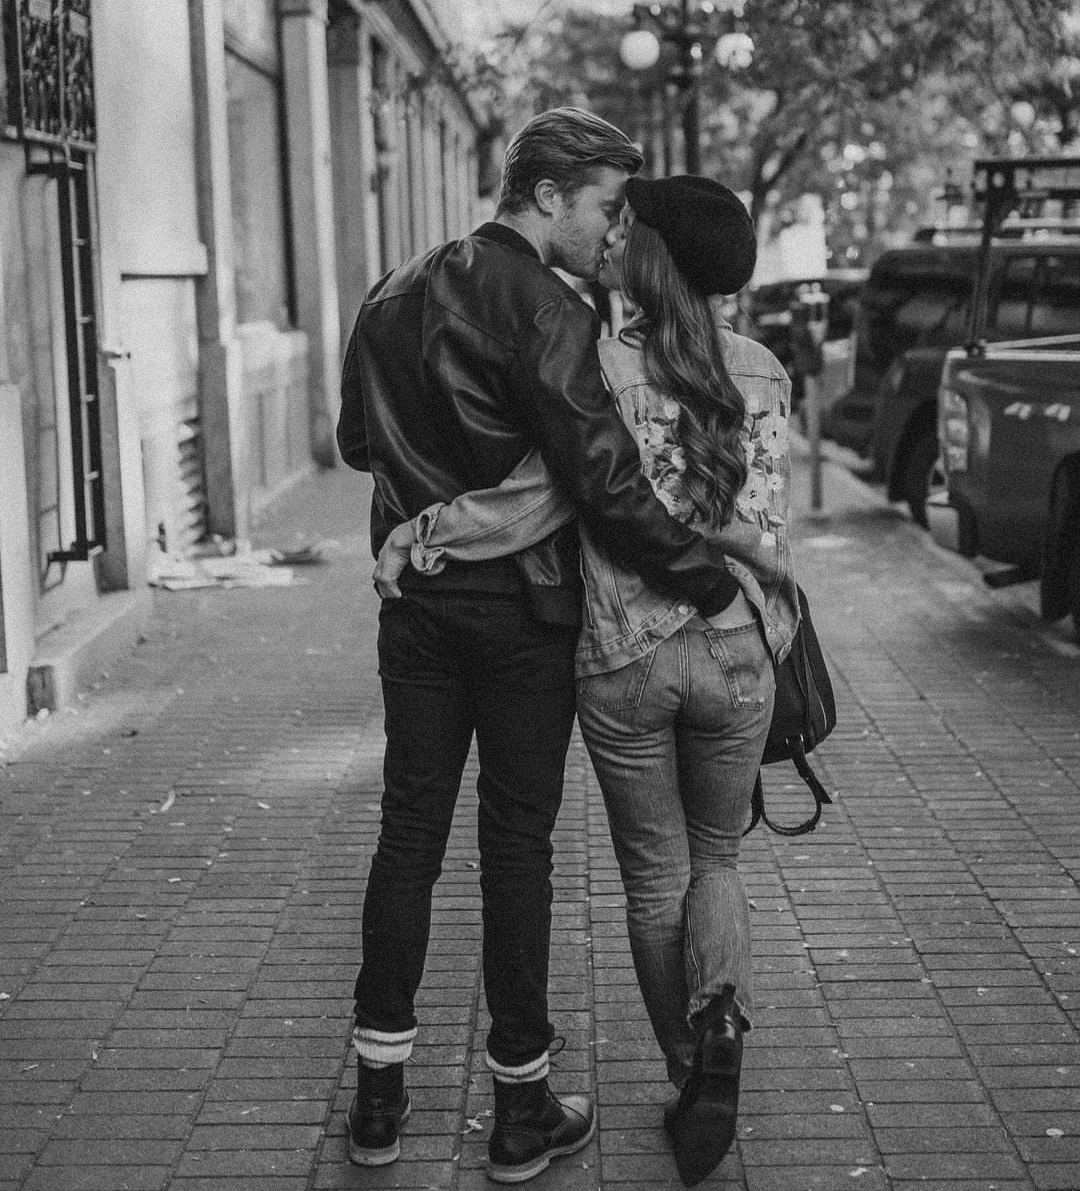 Парень целуется на улице. Поцелуй на улице. Целуются на улице. Поцелуи на улице с девушкой. Влюбленные целуются на улице.